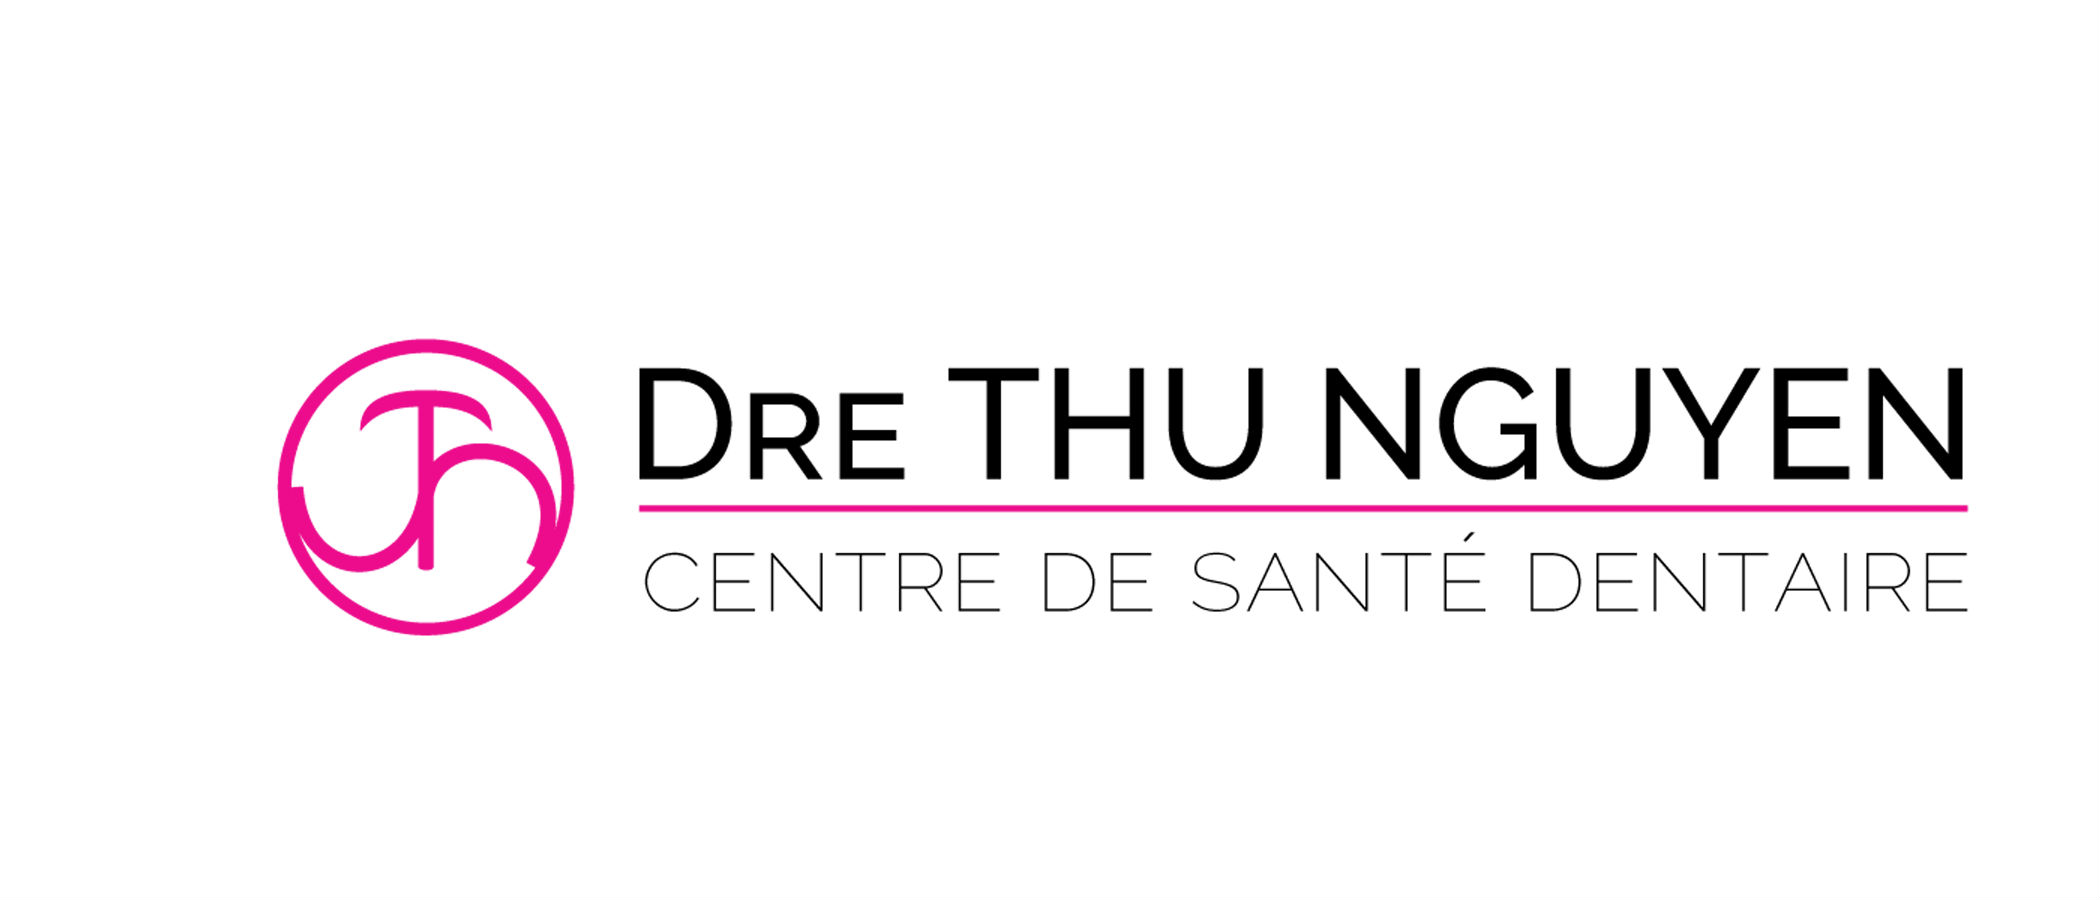 Logo-client-Carrière Dentaire-Centre de santé dentaire Thu Nguyen8